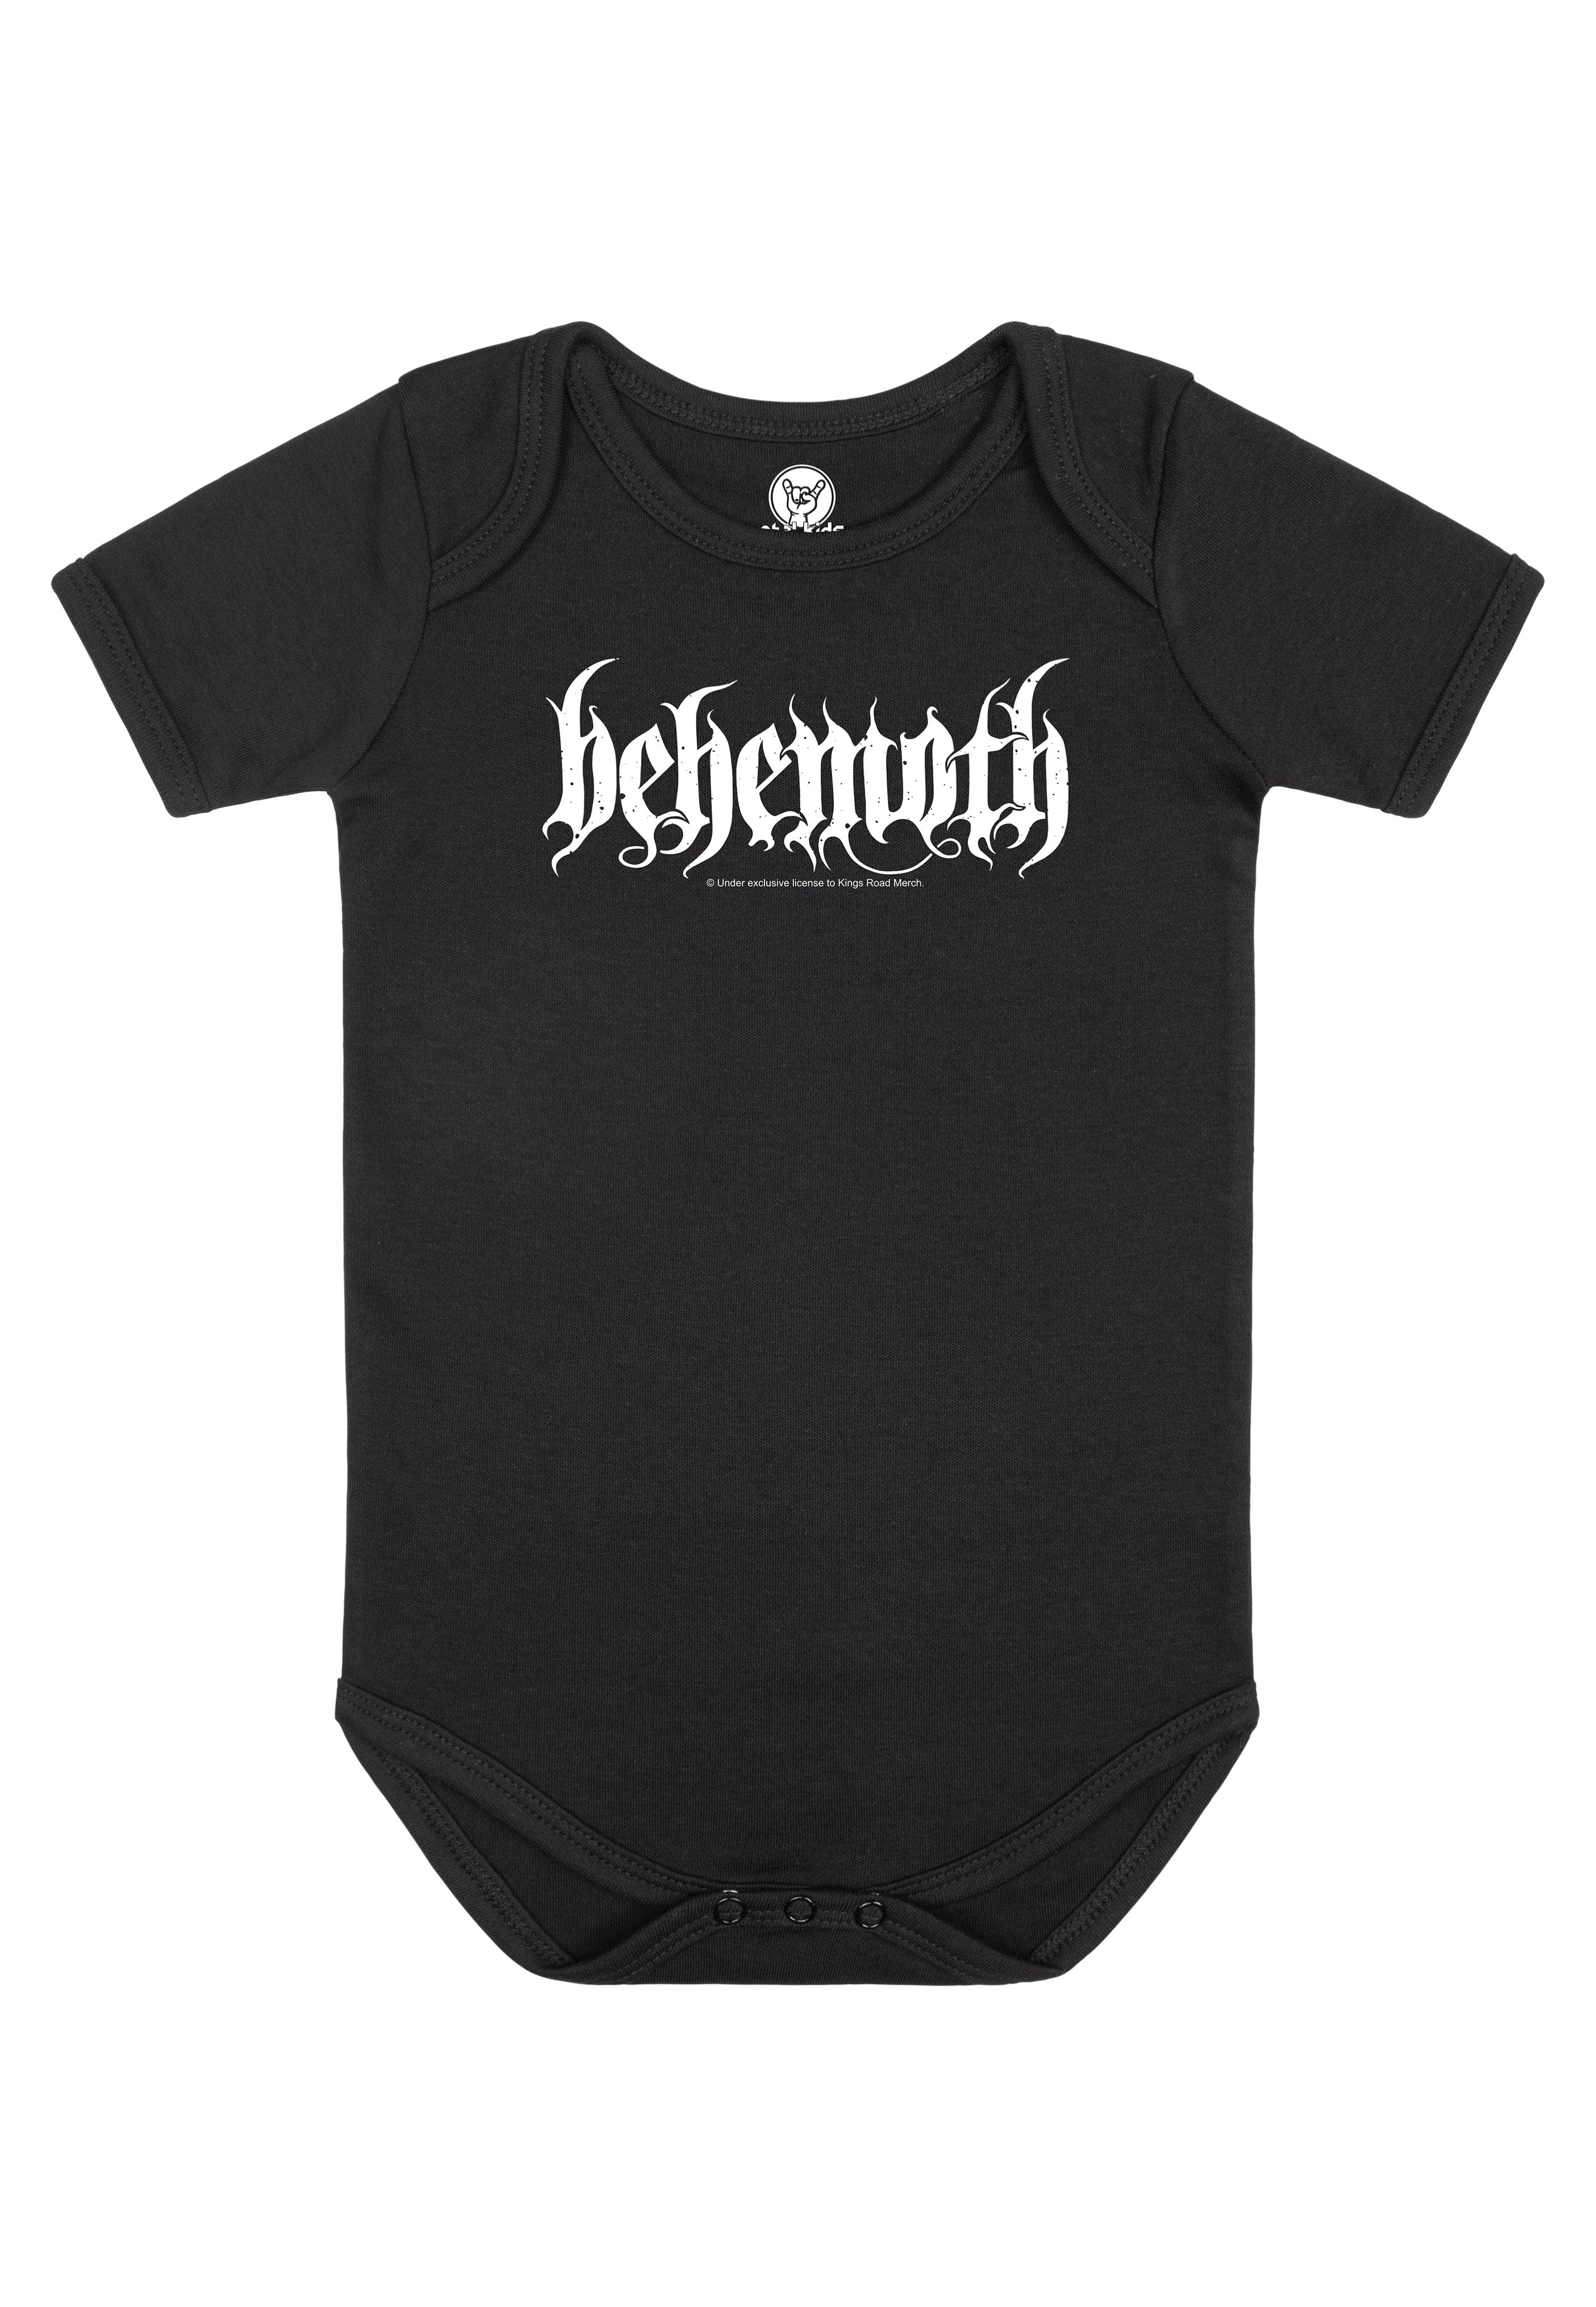 Behemoth - Logo Babygrow Black/White - Bodysuit